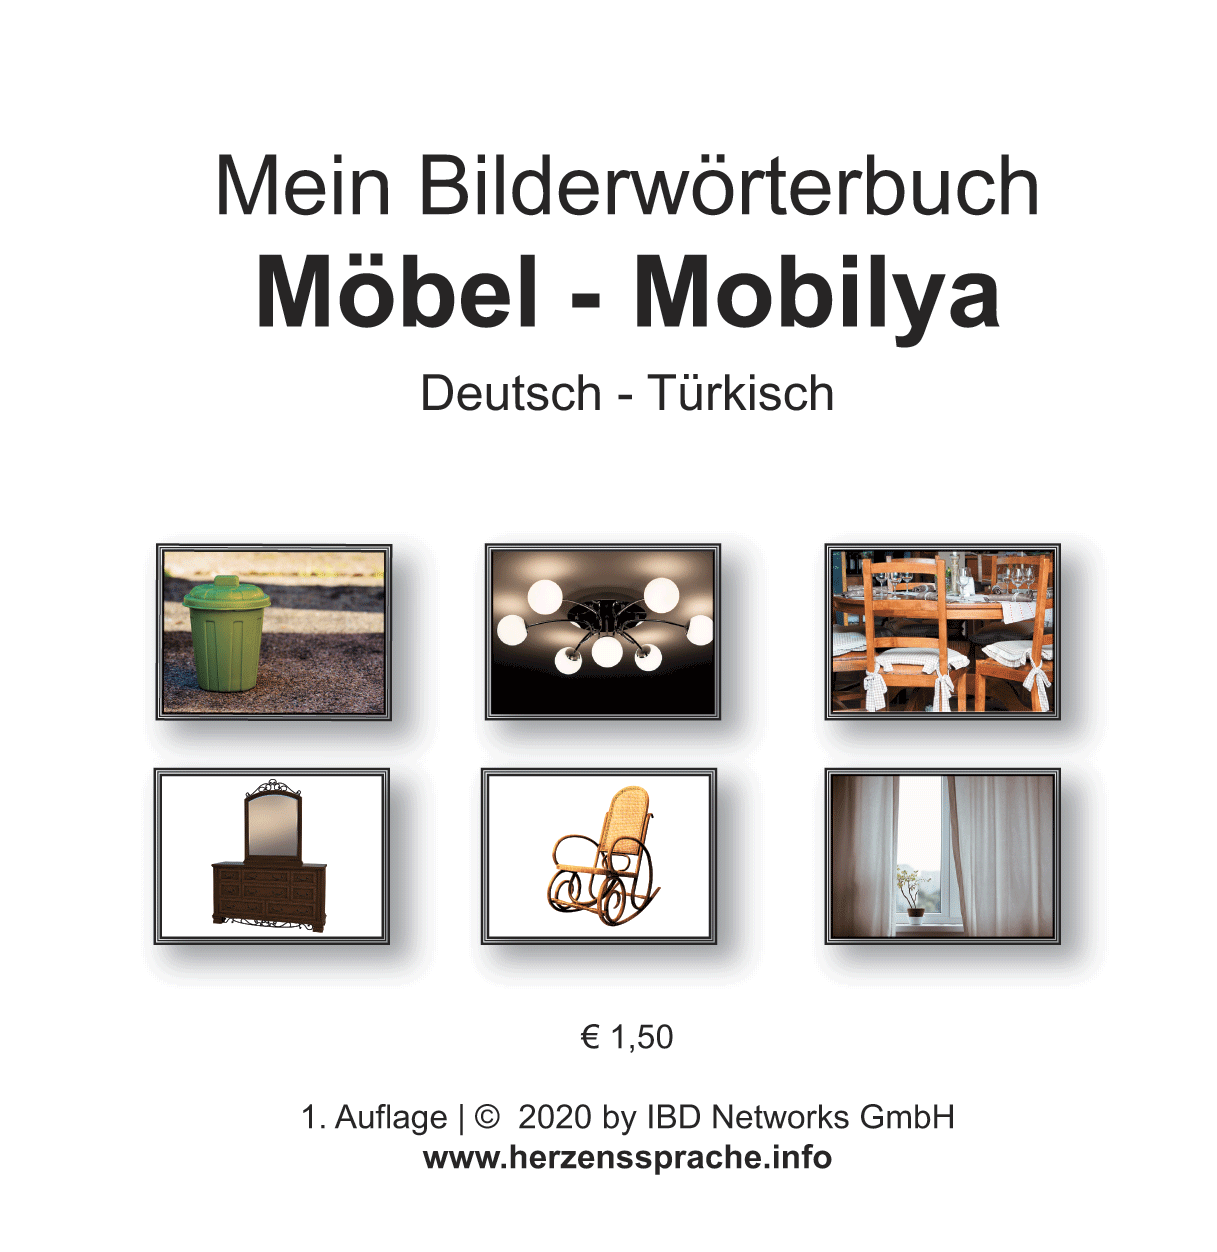 Möbel - Mobilya